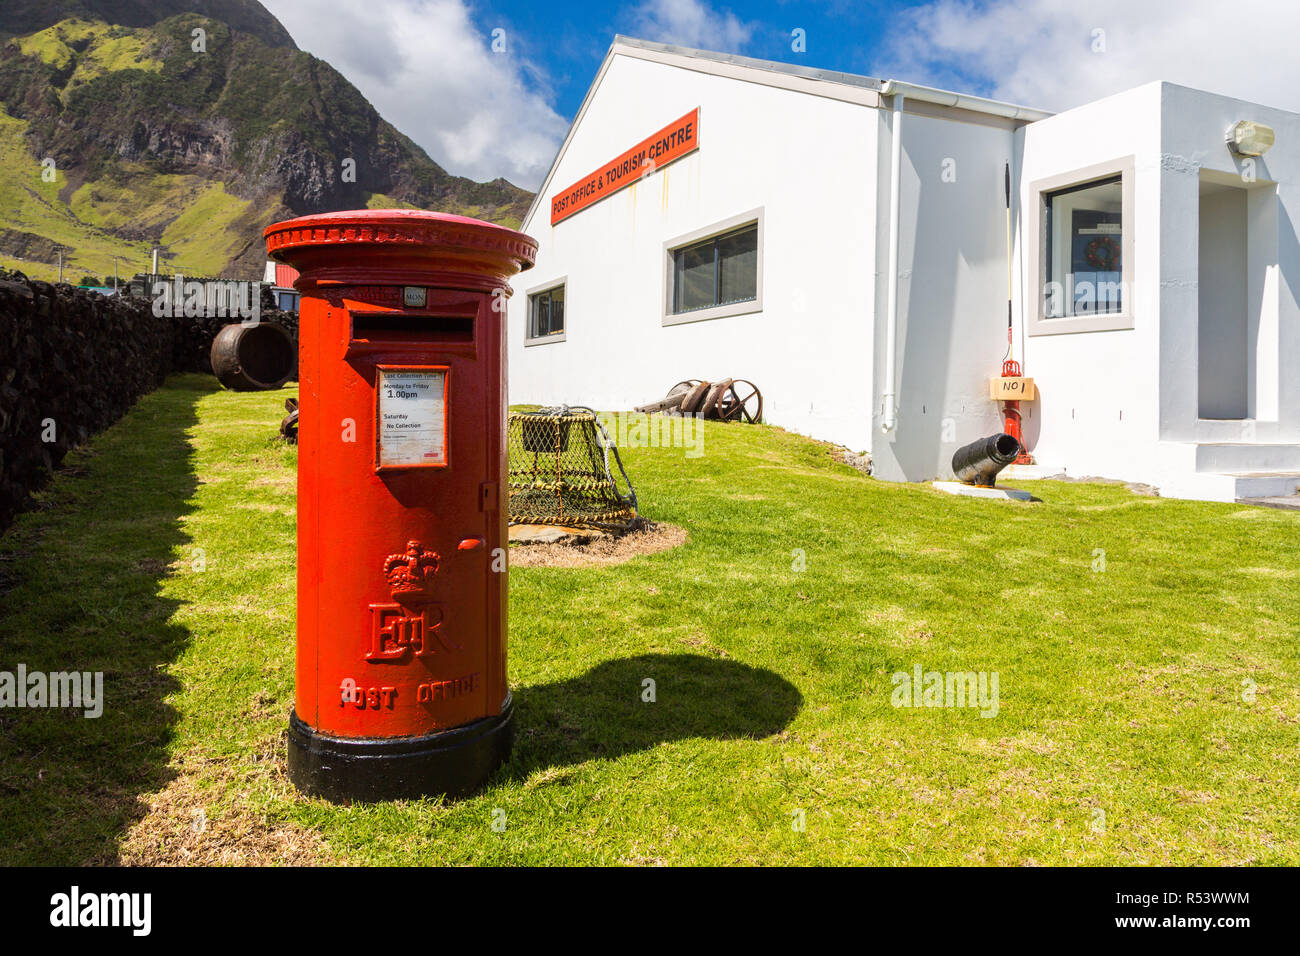 Edinburgh des sept mers, l'île Tristan da Cunha. E II R pilier rouge postbox, post box, d'un bureau de poste et centre touristique, l'Atlanti Banque D'Images